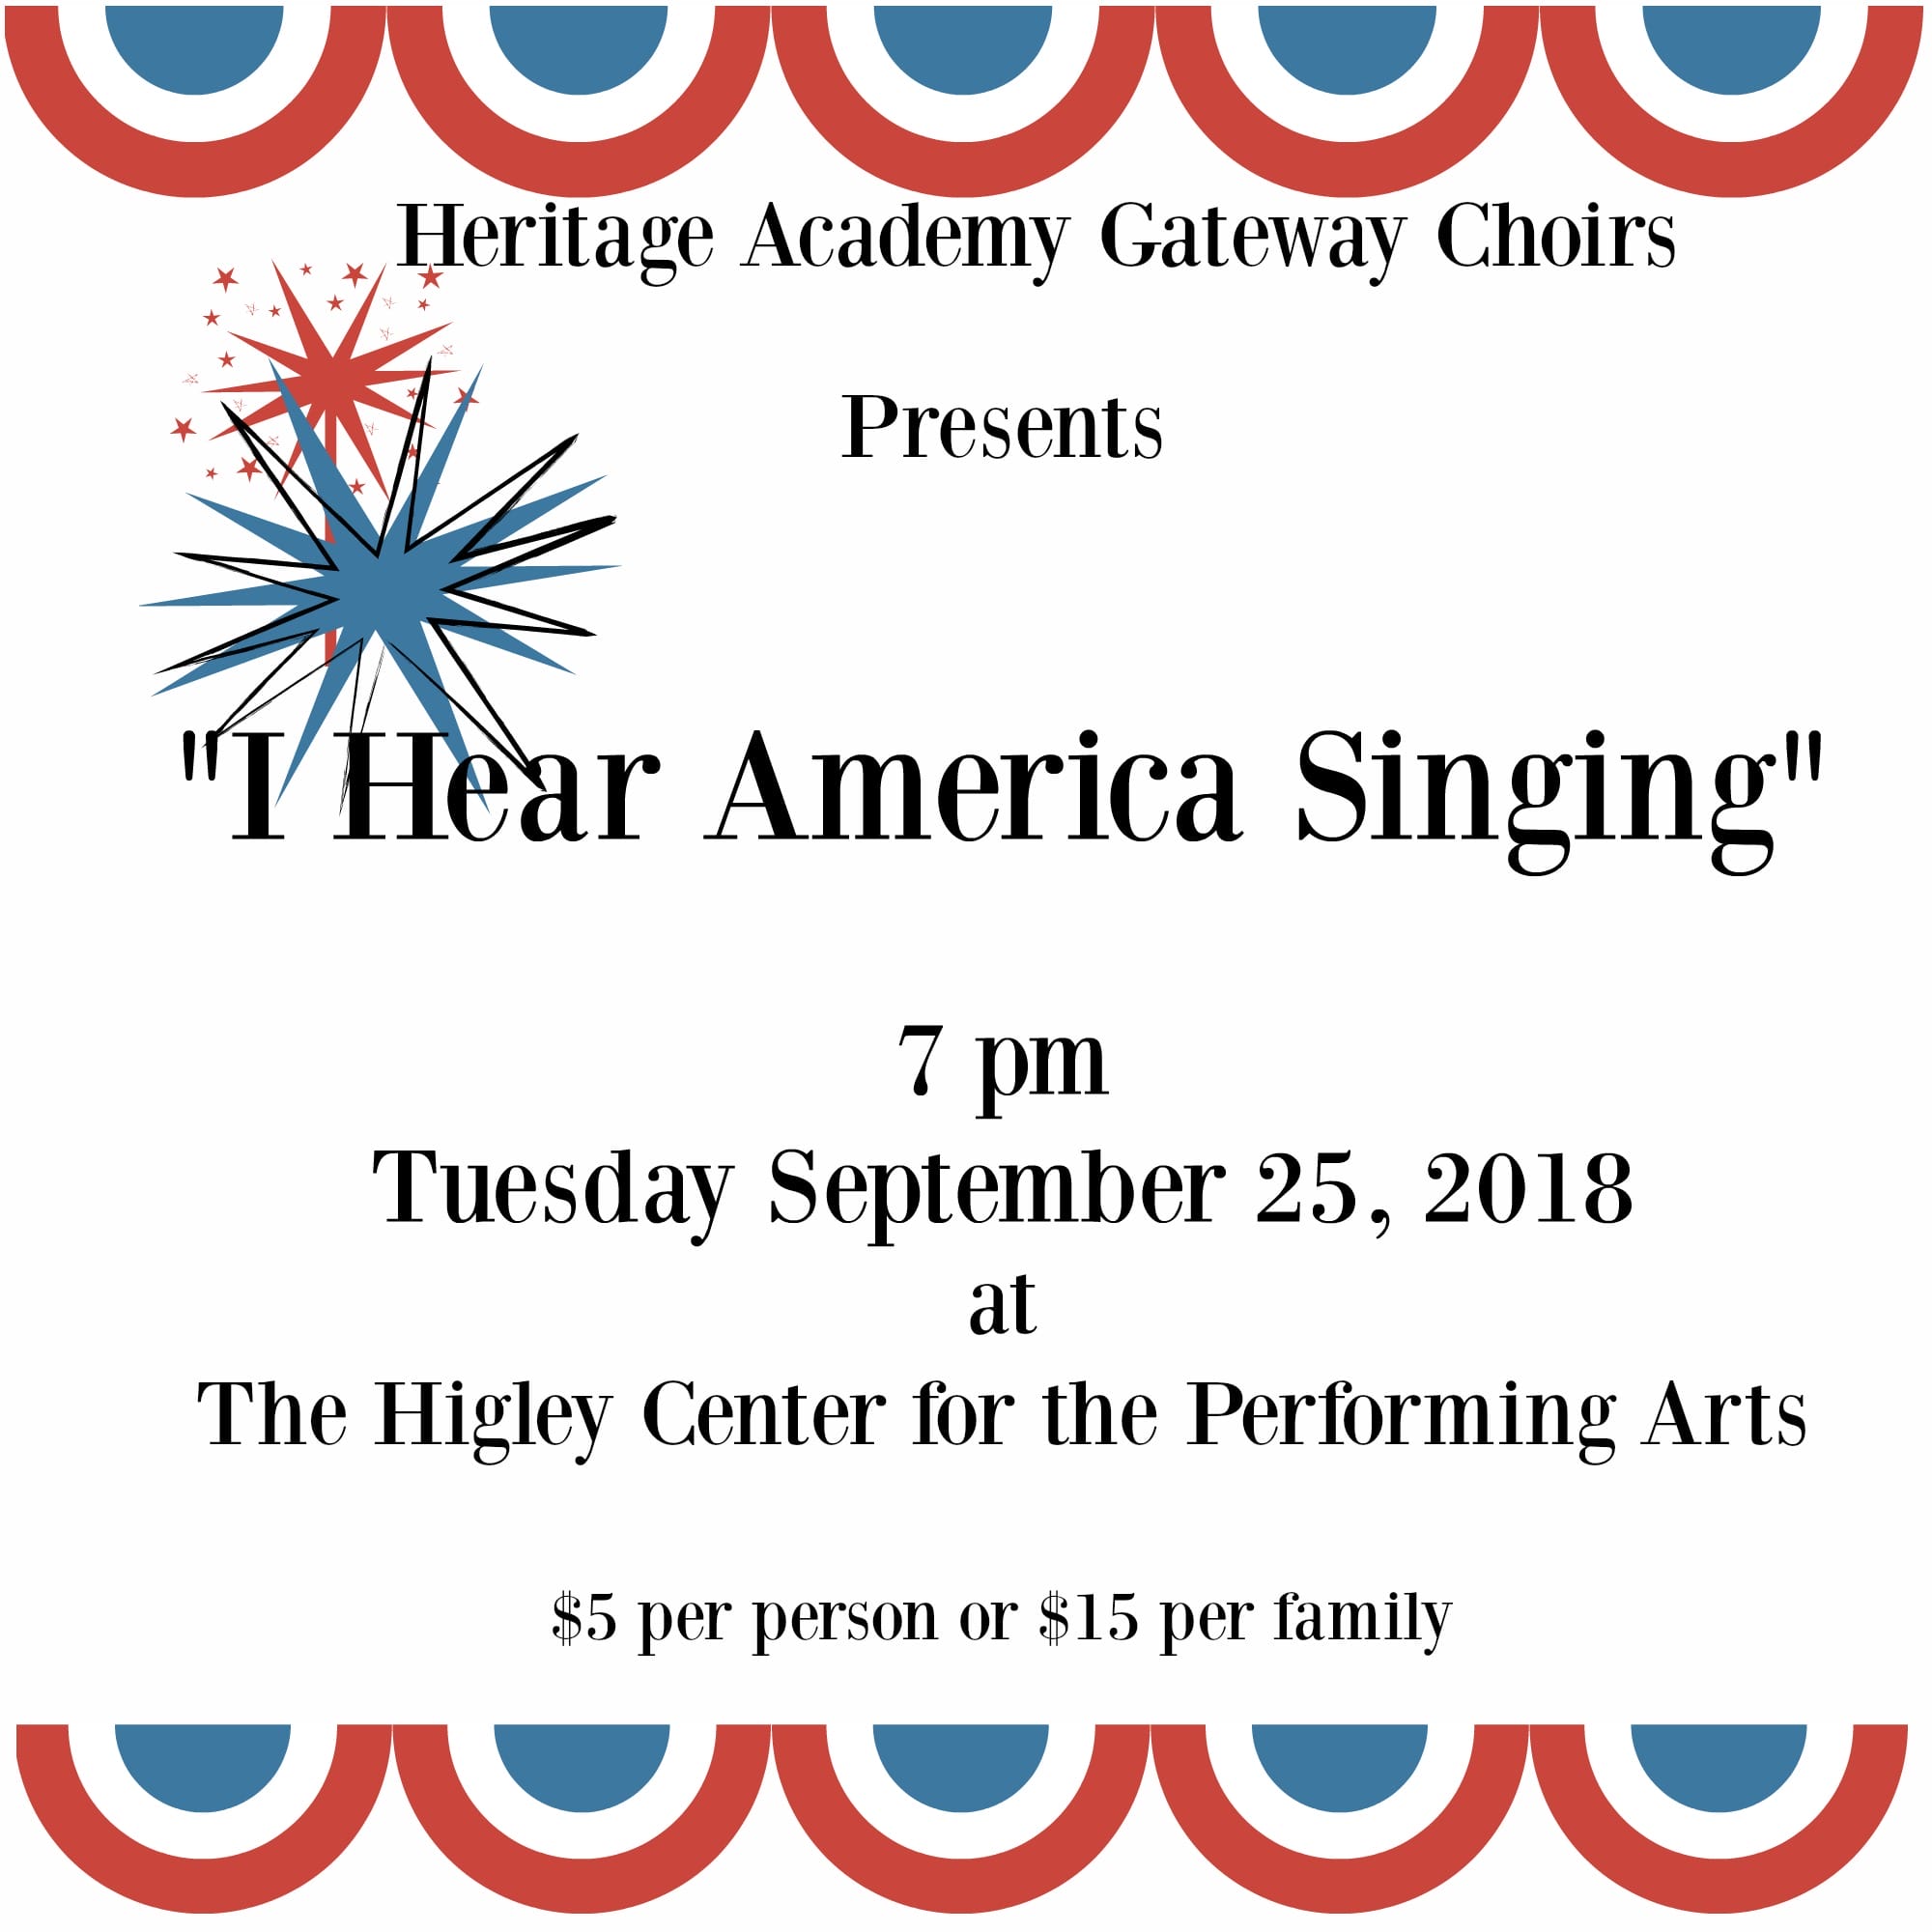 I-Hear-America-Singing